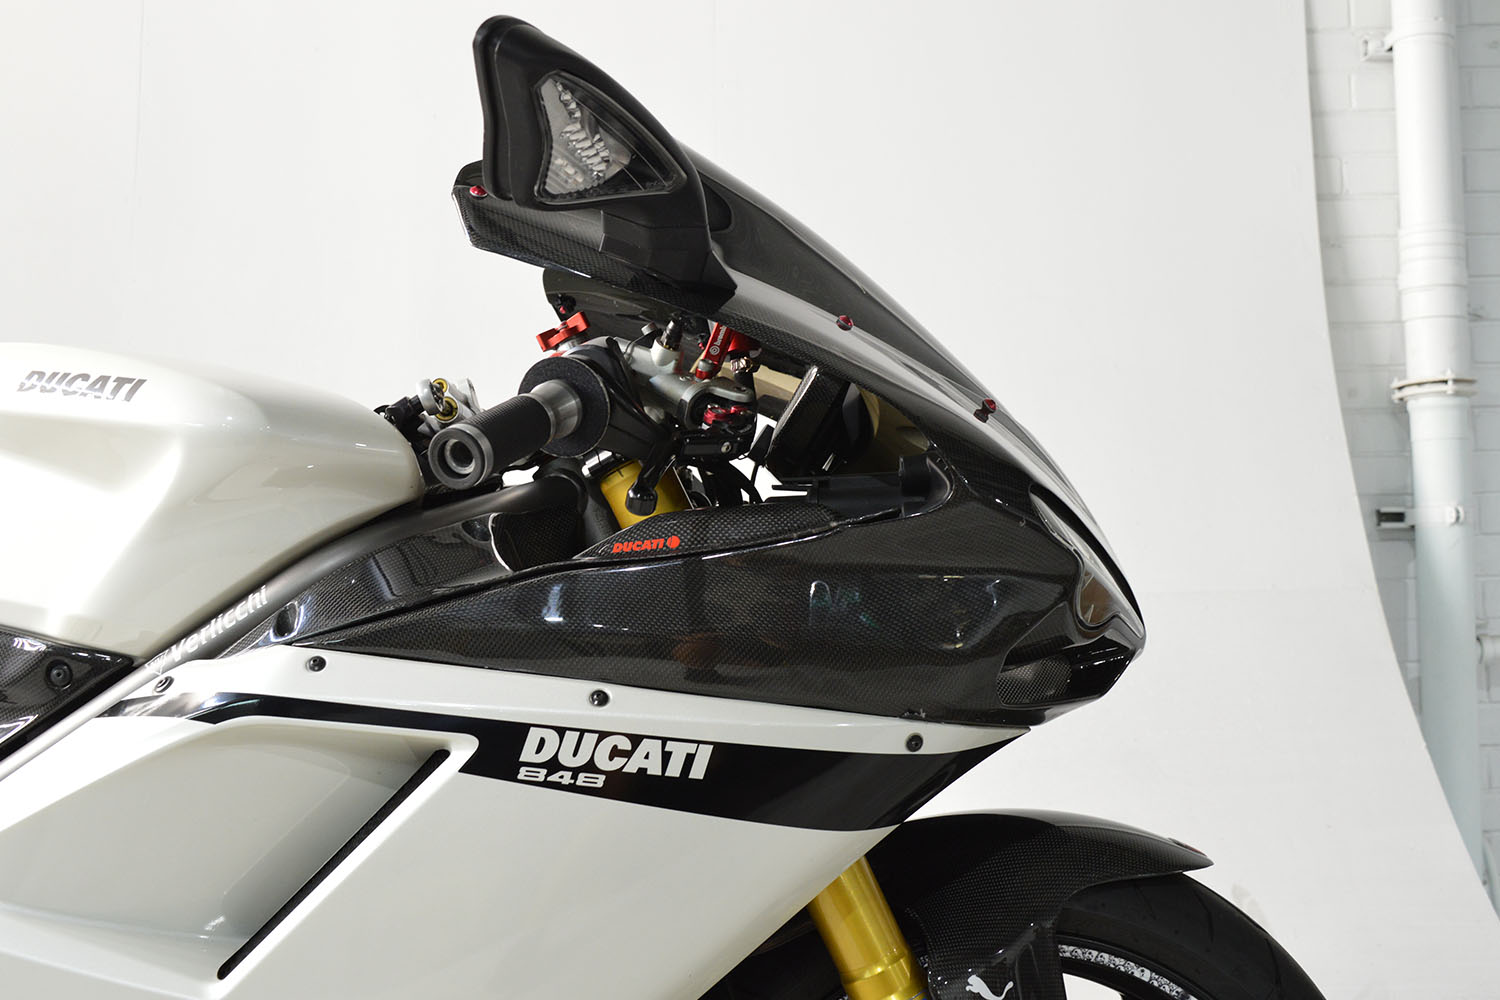 2007 Ducati 848_0016_DSC_1210.jpg